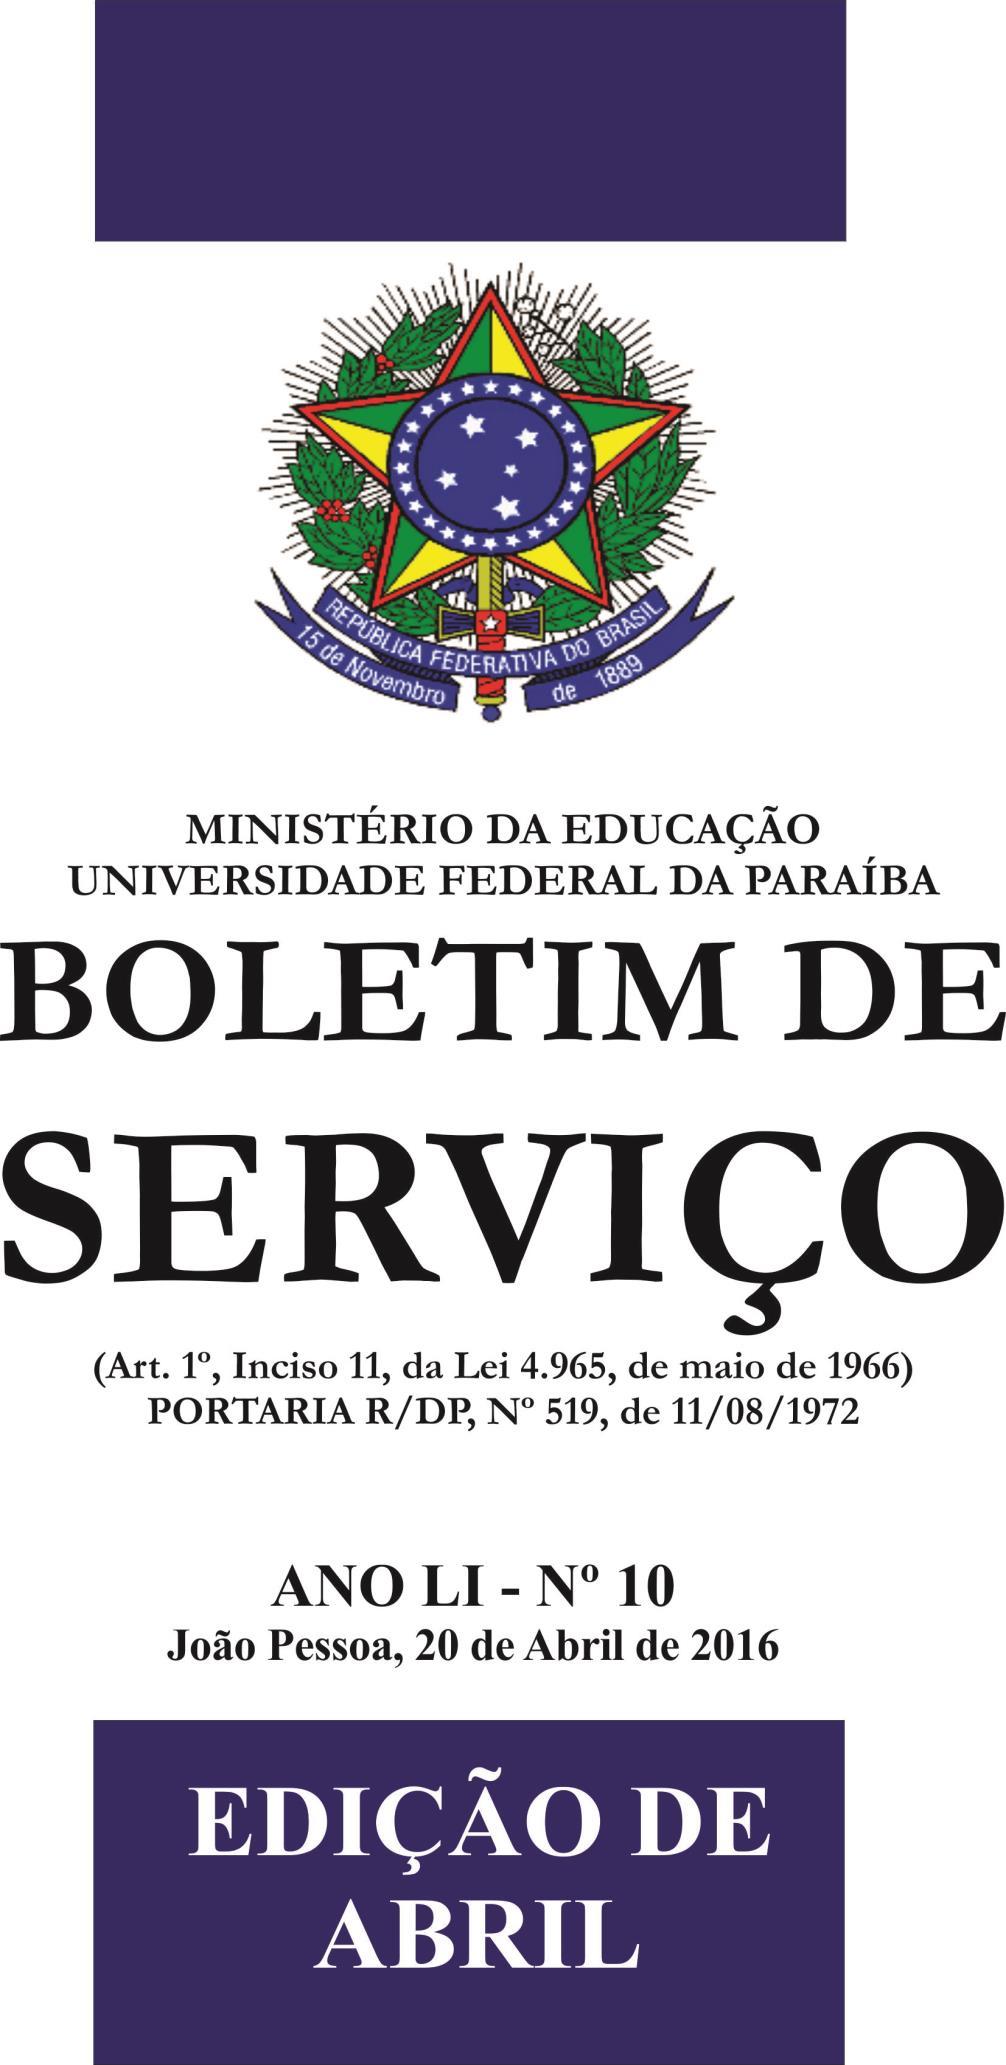 07/01/2019 BOLETIM DE SERVIÇO - Nº 01 PÁGINA 1 ANO LIV